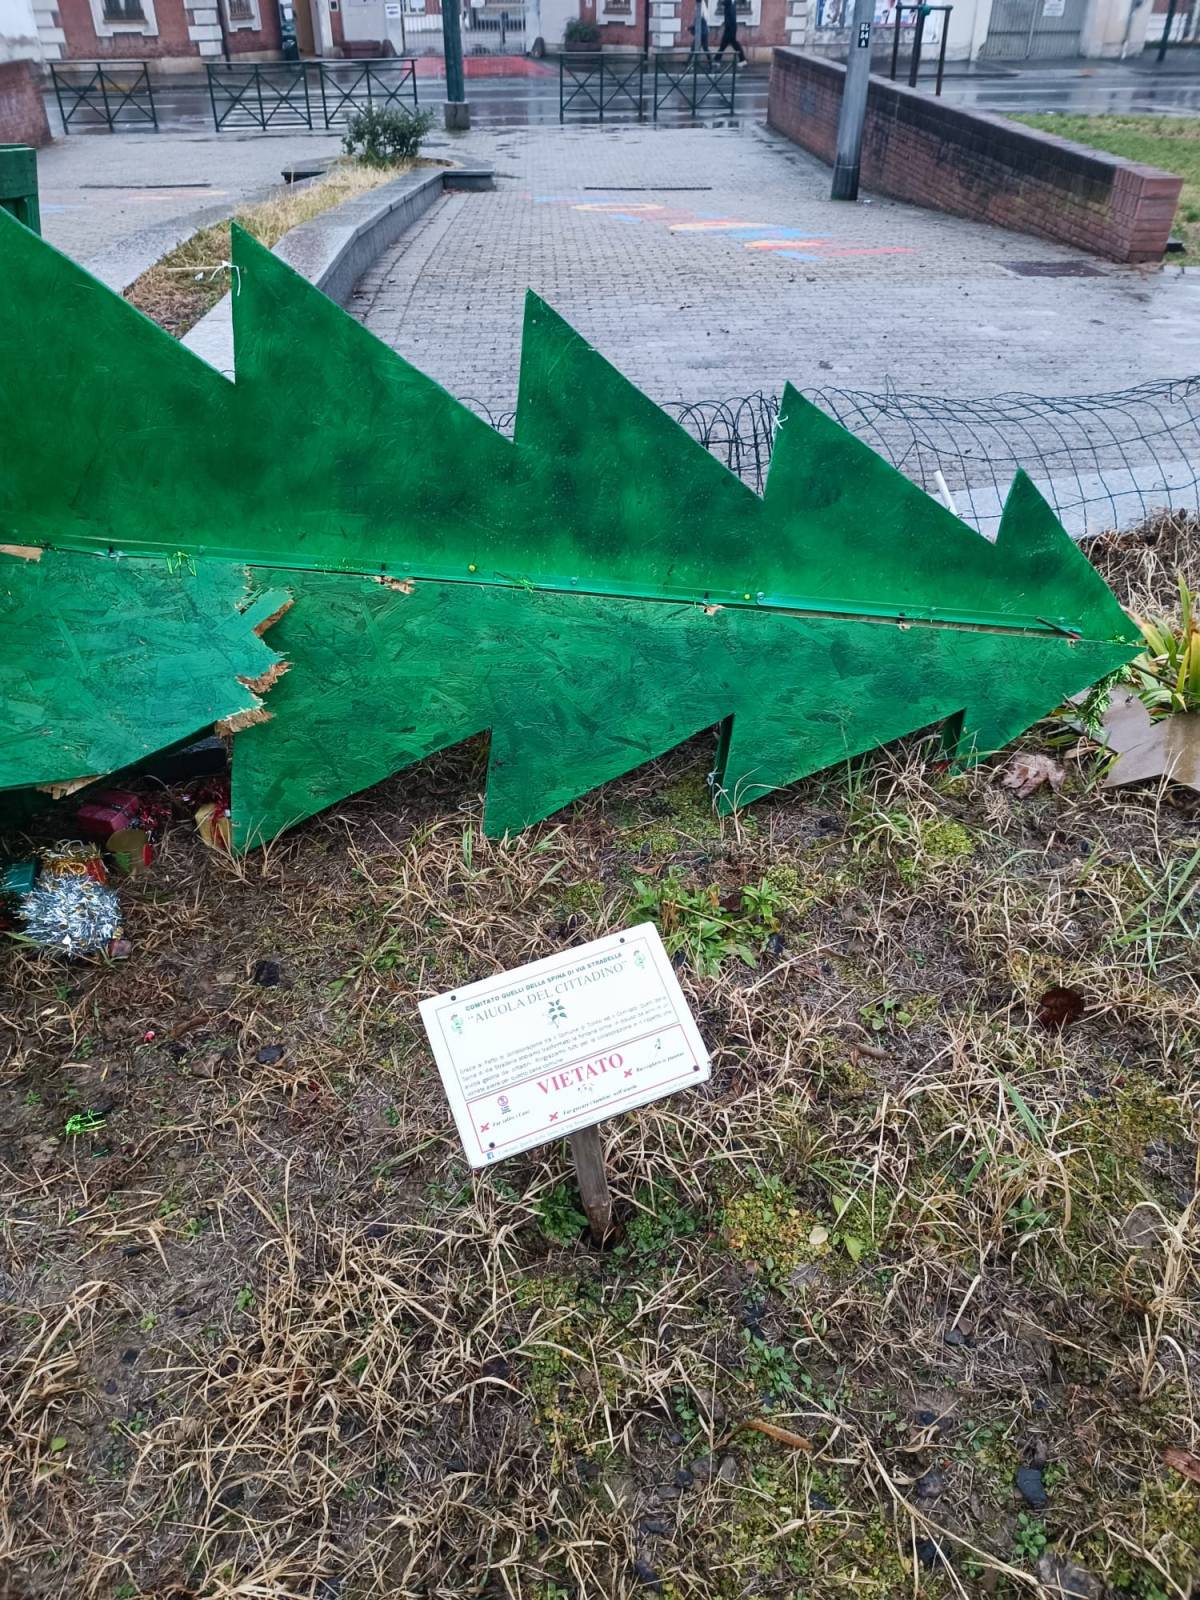 “Non un semplice atto vandalico”. A Torino distrutto un presepe cittadino